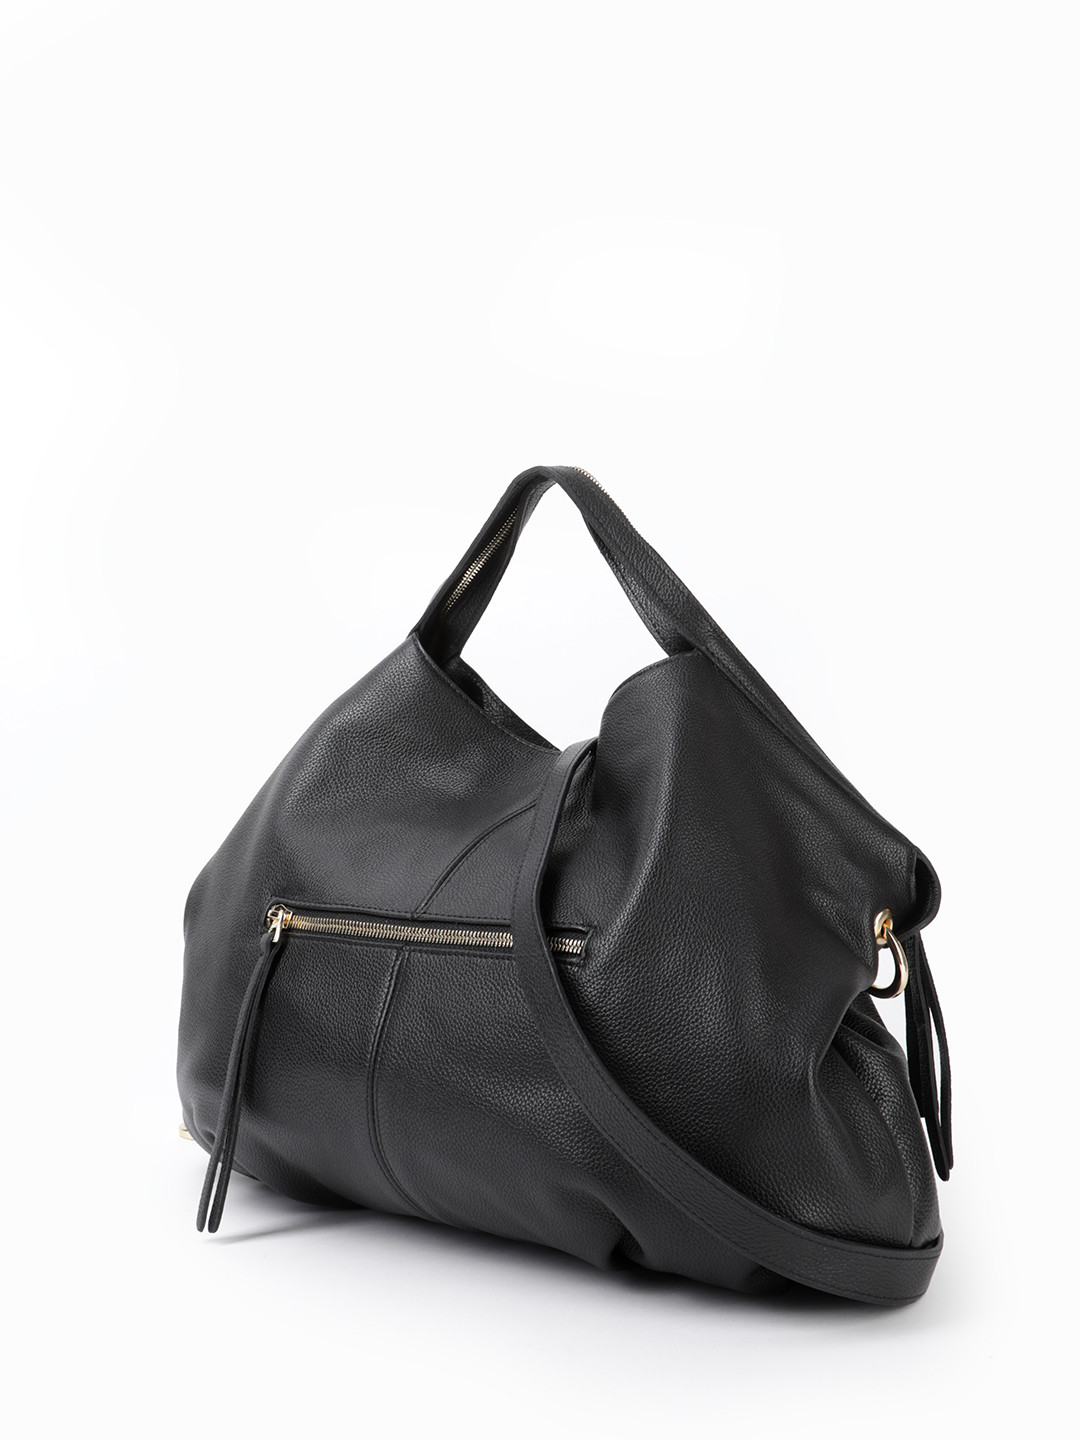 Валберис сумки женские кожаные италия бренды распродажа третье чувство франшиза